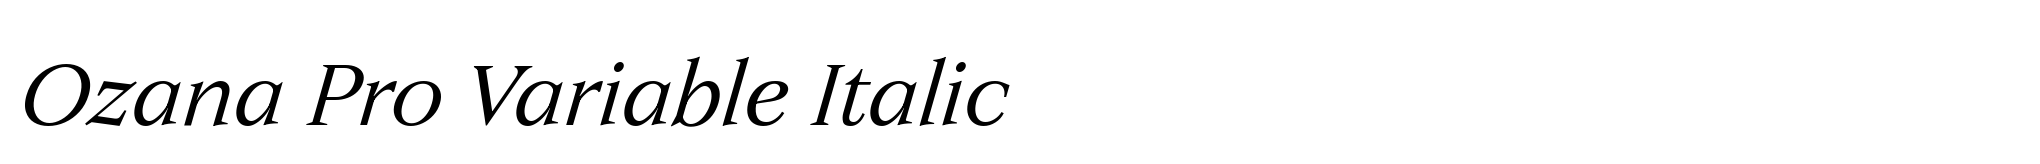 Ozana Pro Variable Italic image